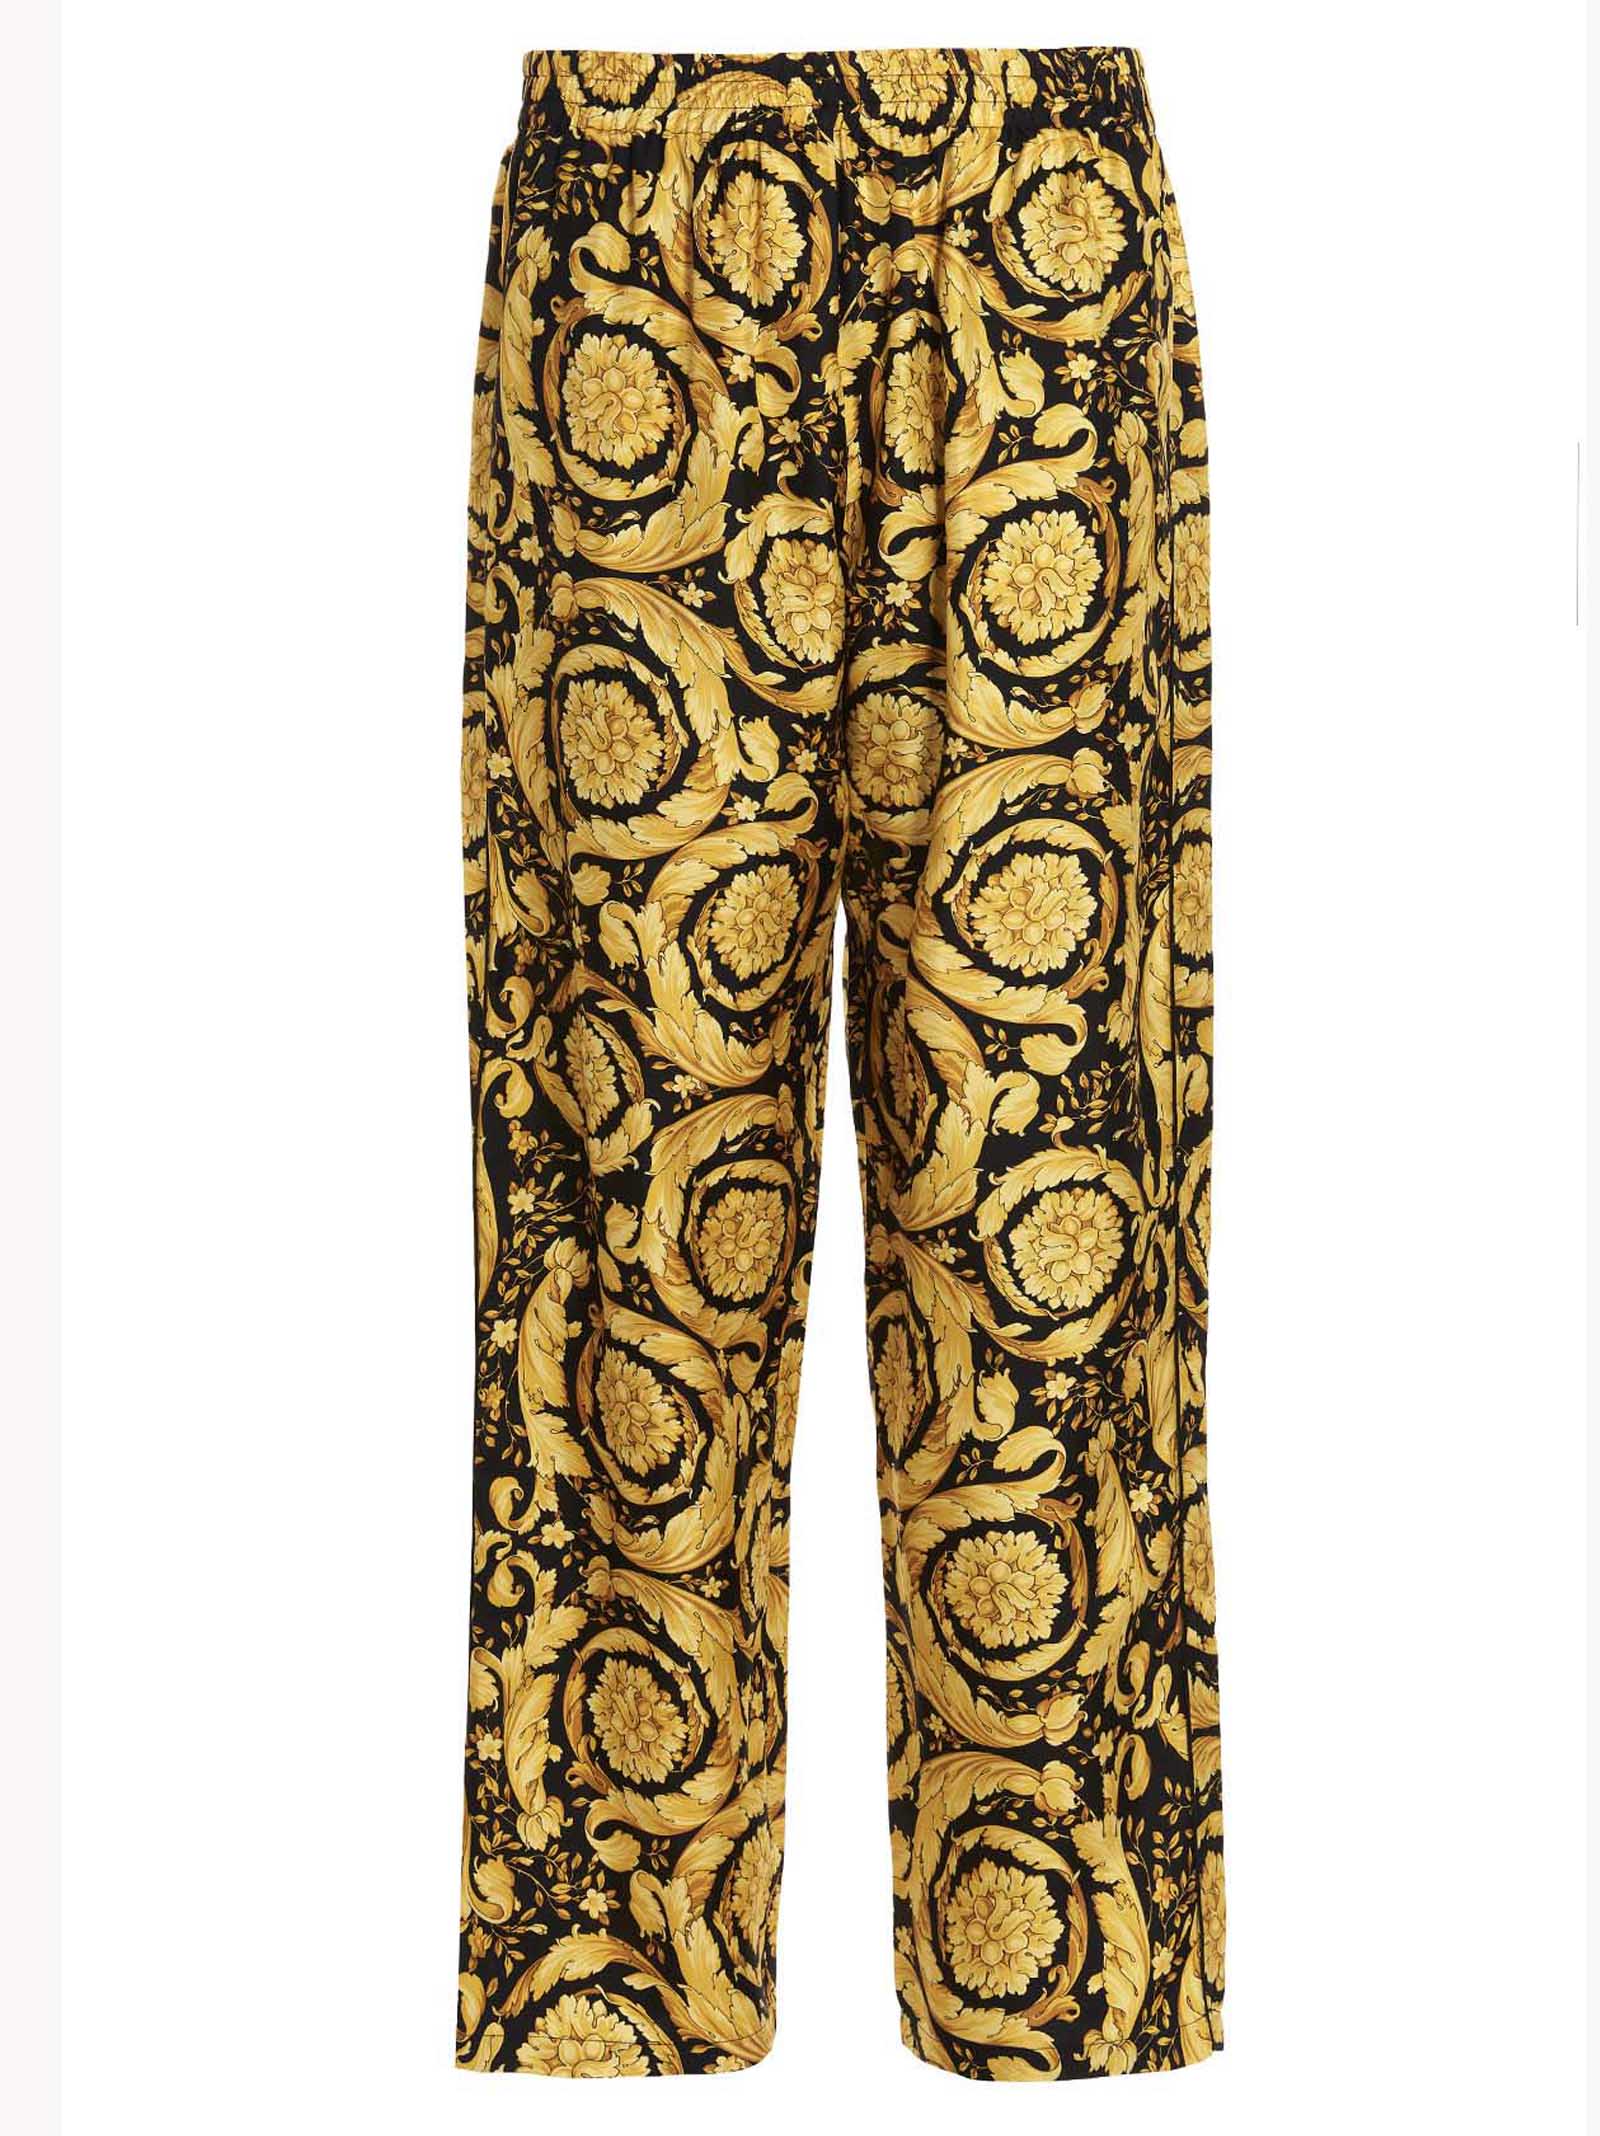 Versace barocco Pajama Pants